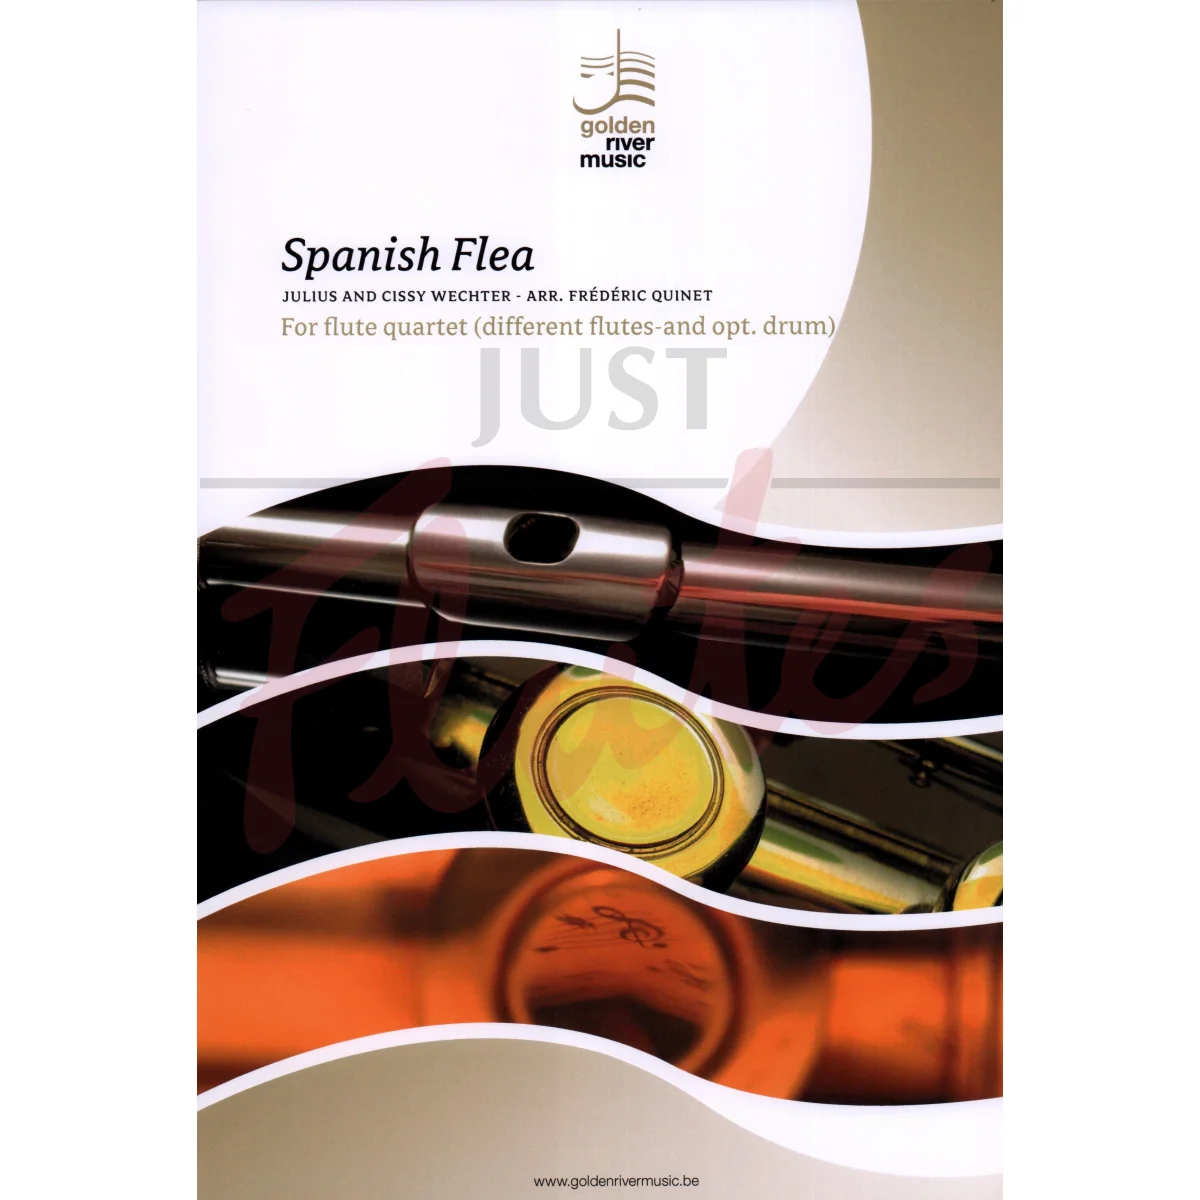 Spanish Flea for Mixed Flute Quartet